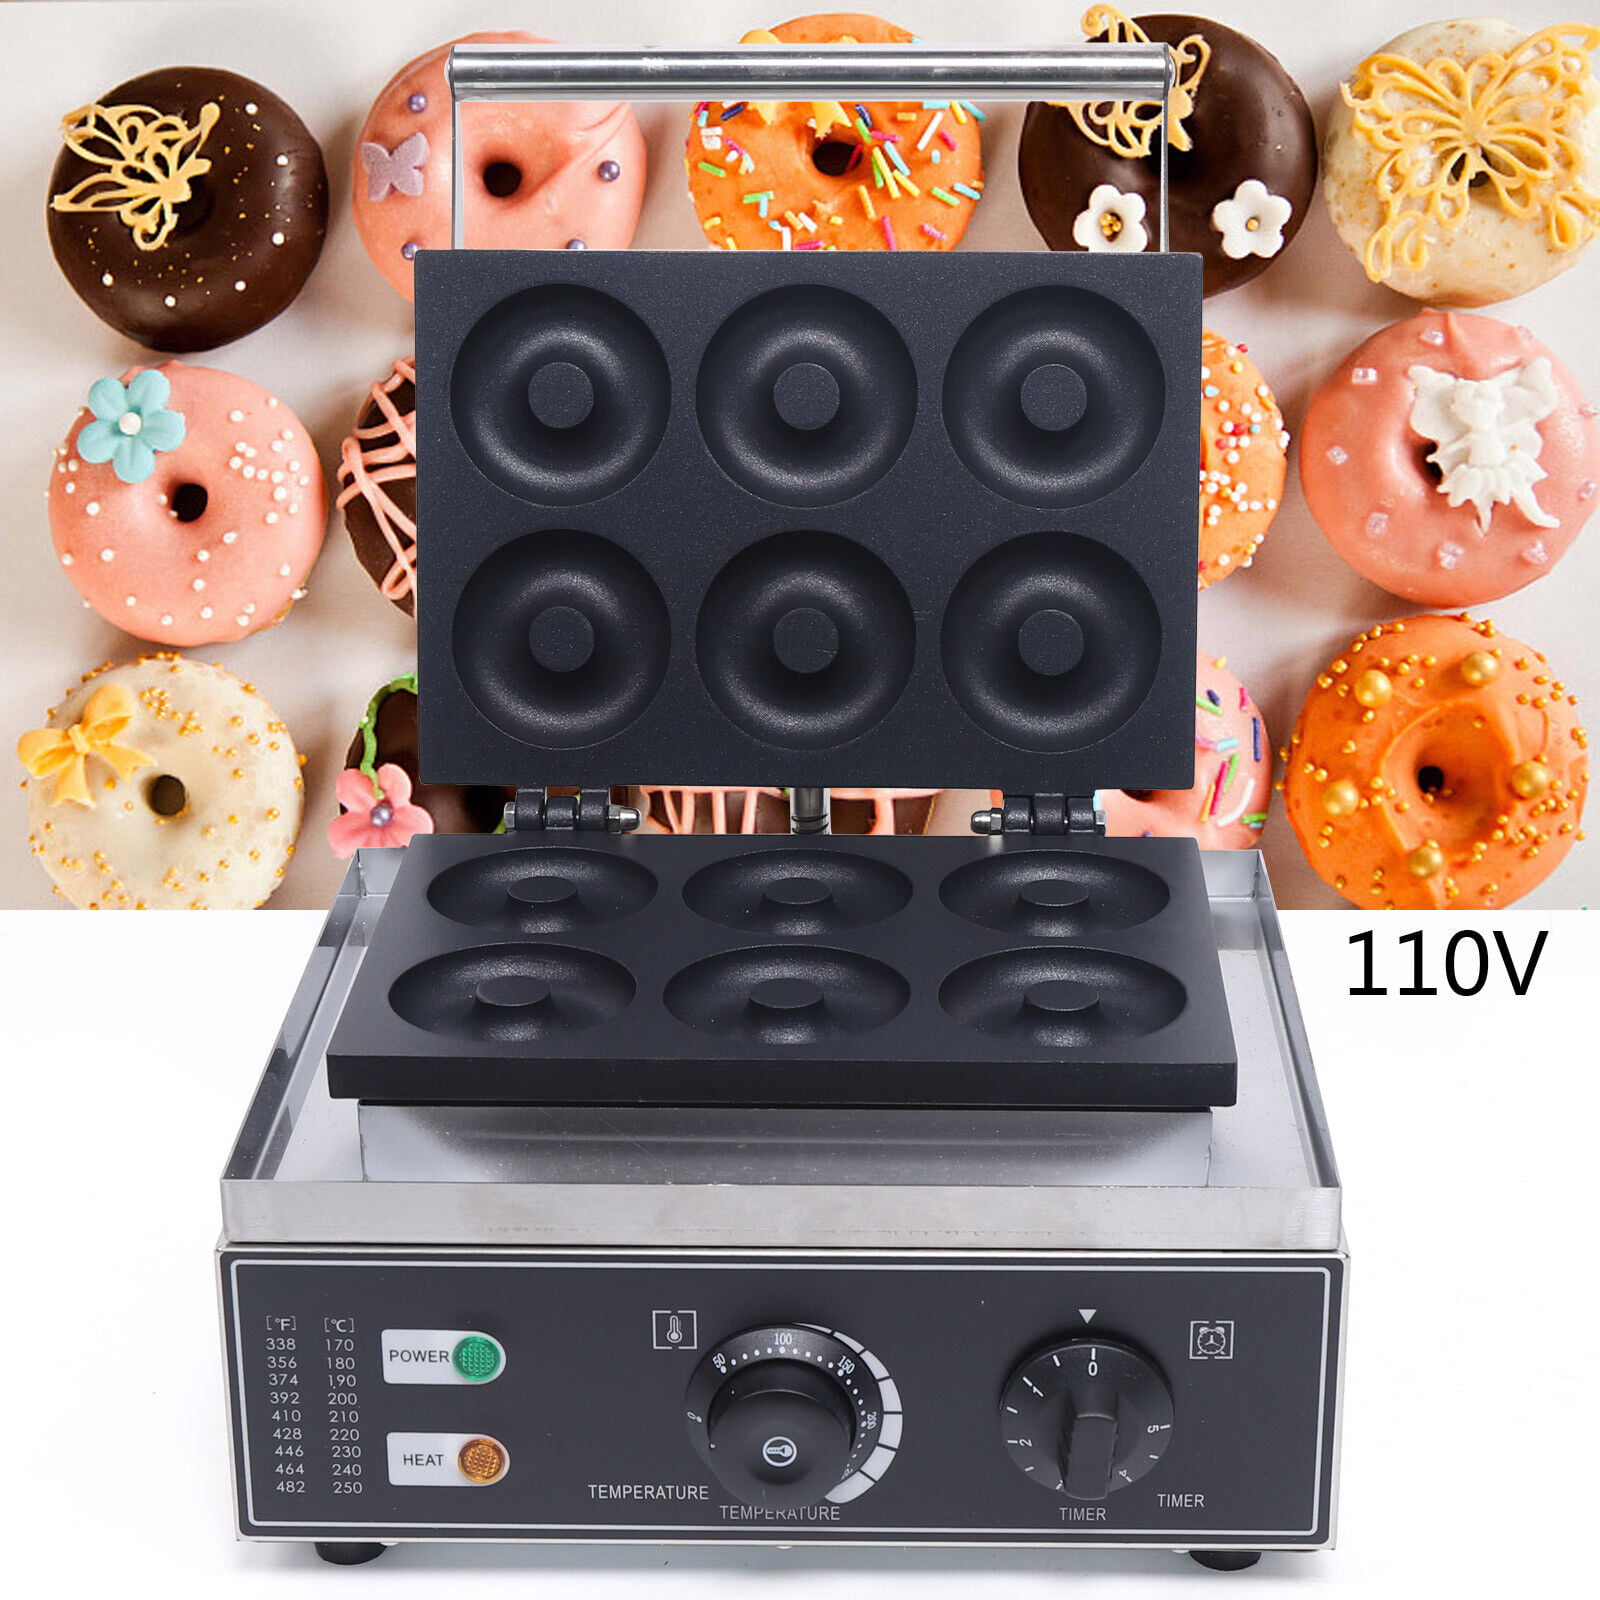 300 ℃ produttore elettrico a ciambella antiaderente per cucina professionale Aohuada 1550 W 110 V 6 fori Macchina per waffel donut industriale riscaldamento doppio 50 